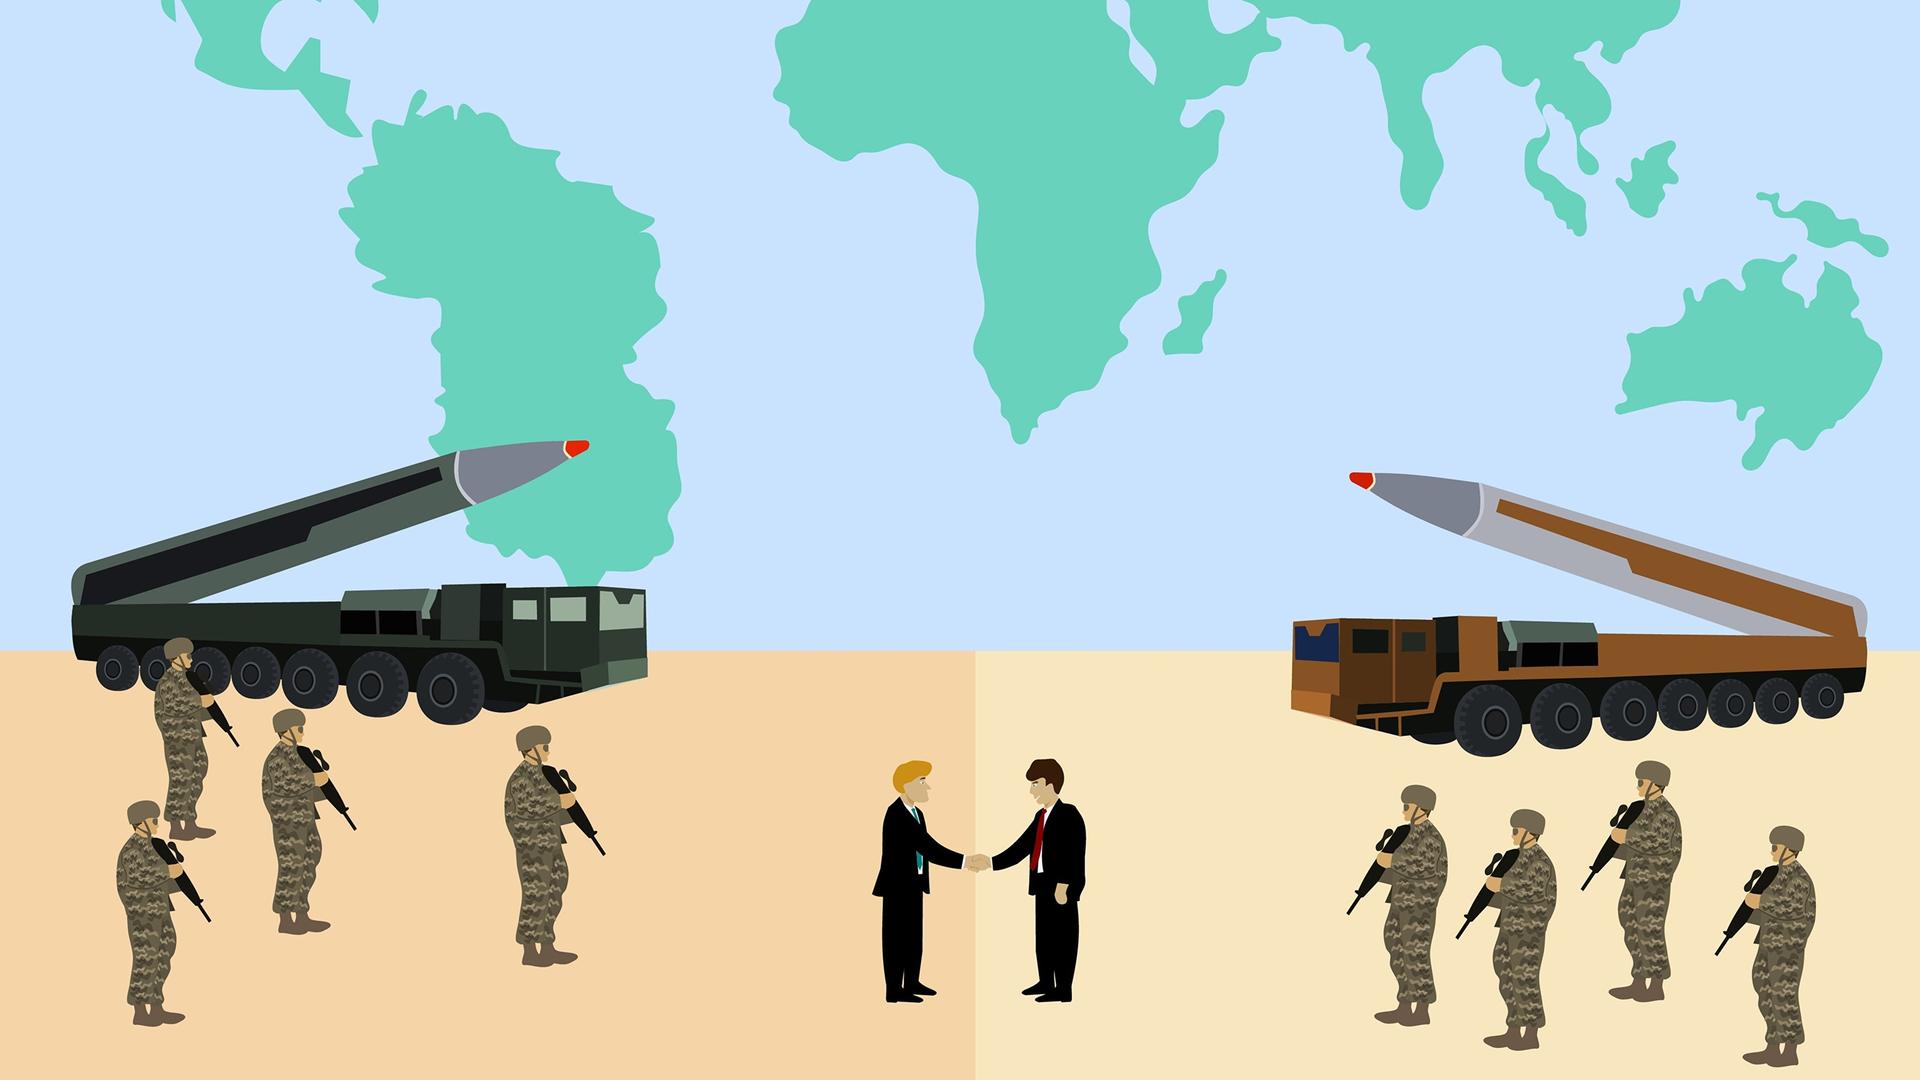 Illustration: Zwei Männer geben sich vor einer großen Weltkarte die Hand, während links und rechts bewaffnete Soldaten stehen und zwei Raketen gegeneinander gerichtet sind.